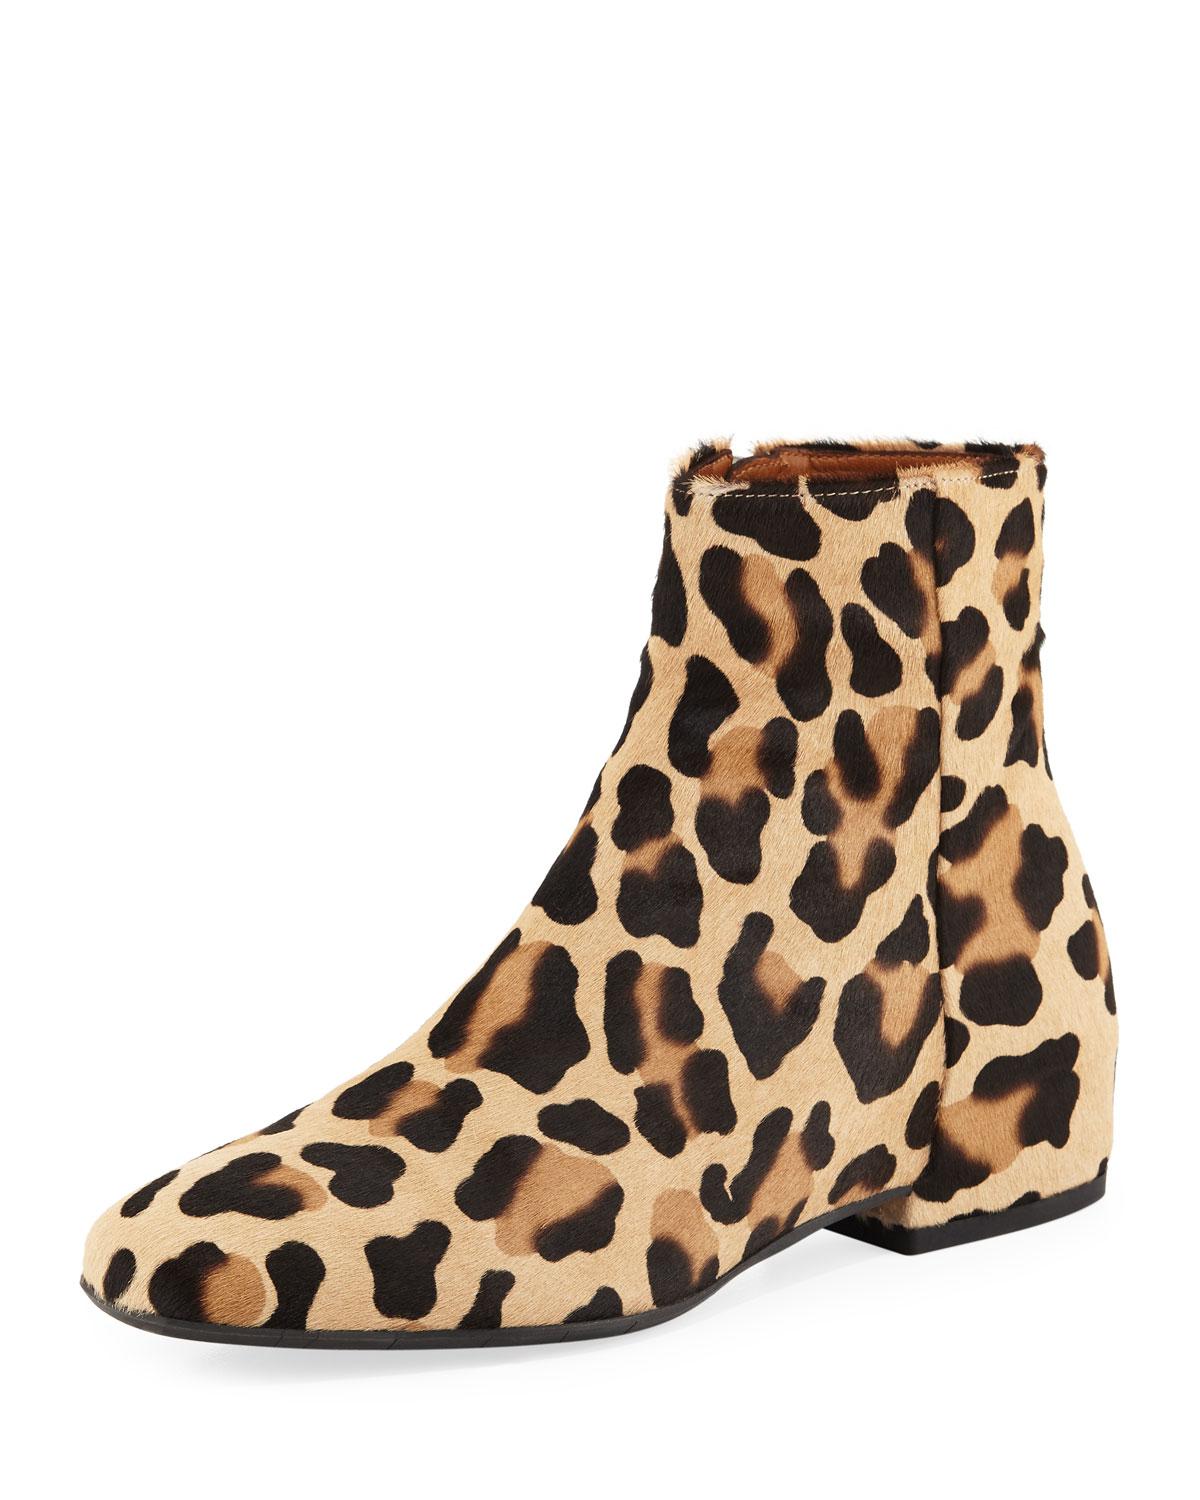 aquatalia leopard boots